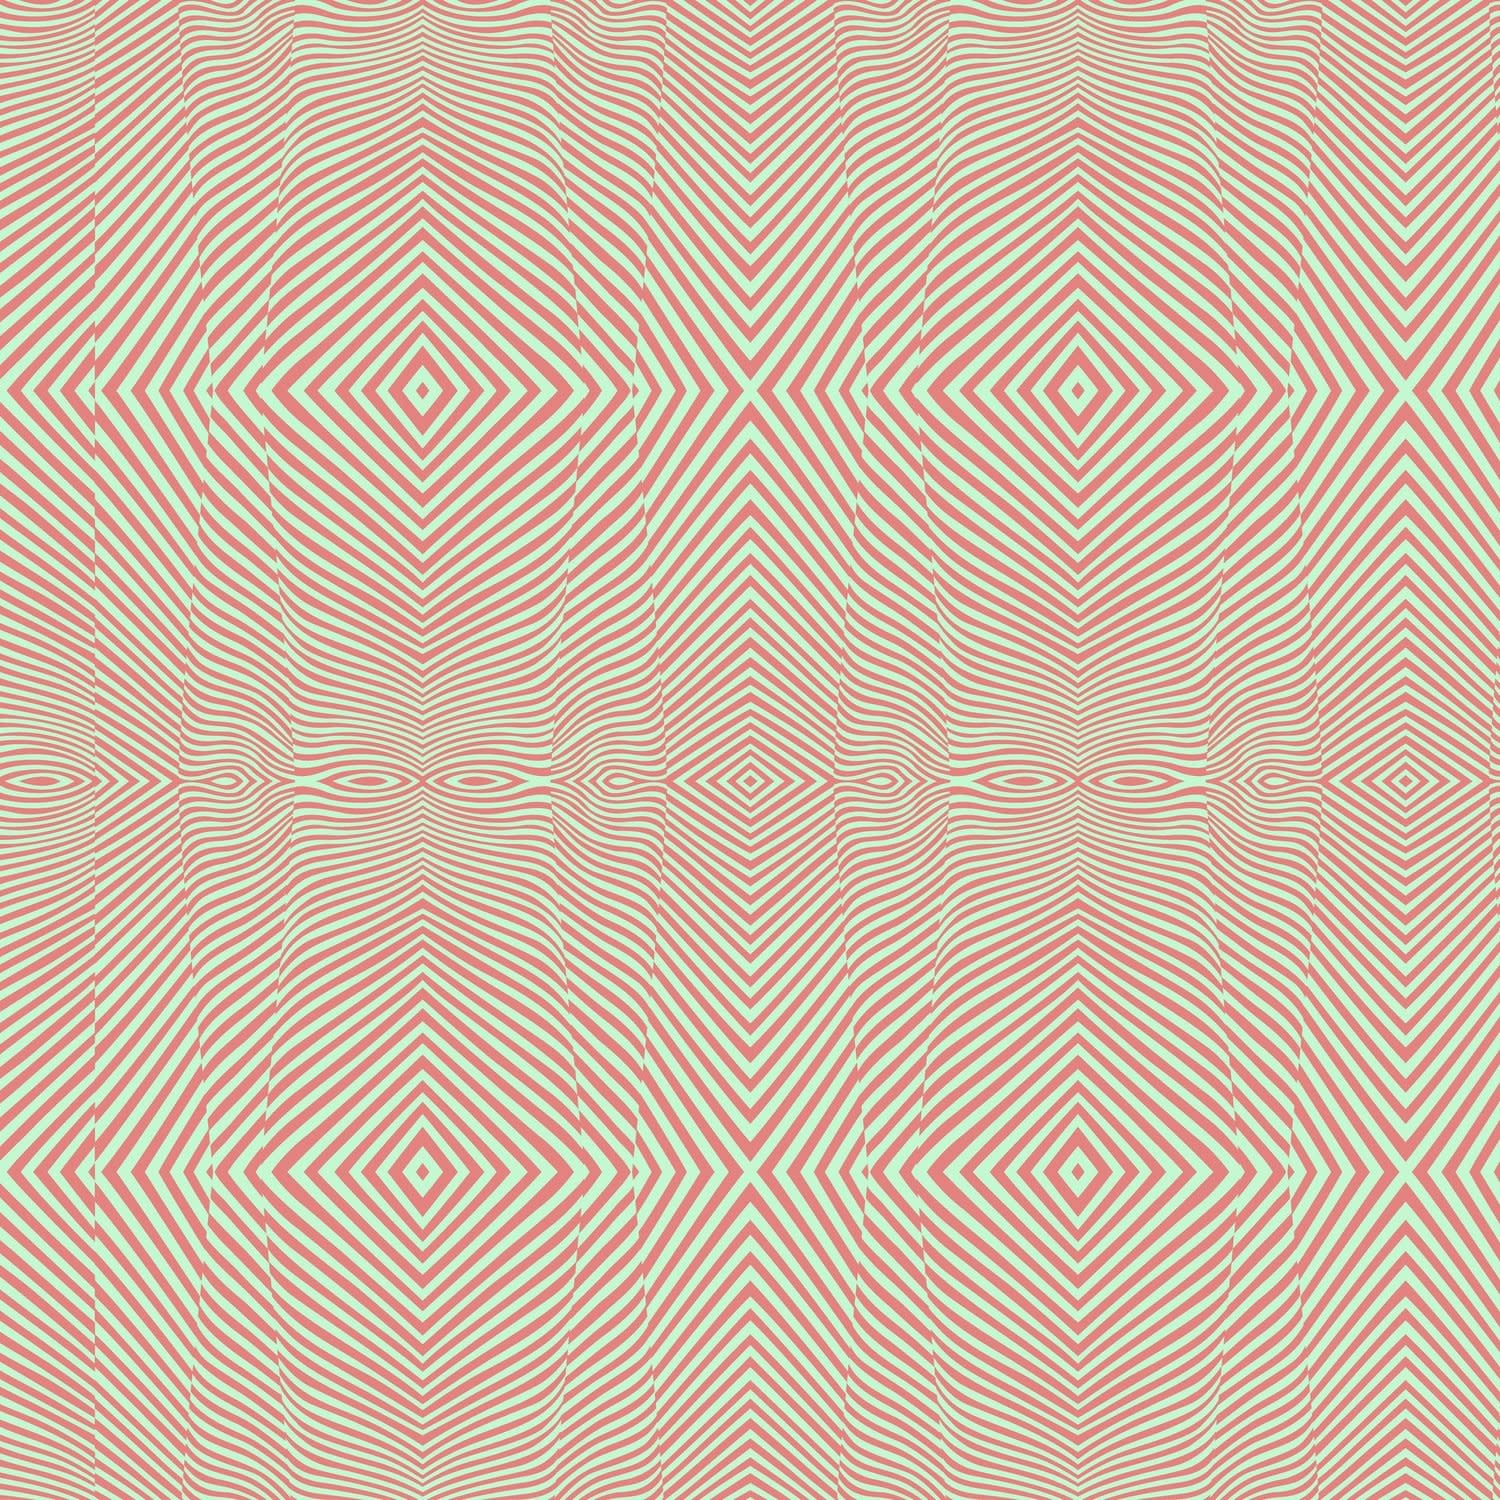 Lớp nền Tula Pink chắc chắn sẽ thu hút sự chú ý của bạn bởi độ chi tiết và tinh tế trong từng đường nét. Với một loạt các họa tiết khác nhau, bạn có thể tạo ra những tác phẩm sáng tạo không giới hạn mà vẫn giữ được phong cách thực sự riêng của mình. Xem ngay hình ảnh liên quan để bắt đầu cuộc phiêu lưu sáng tạo của bạn!